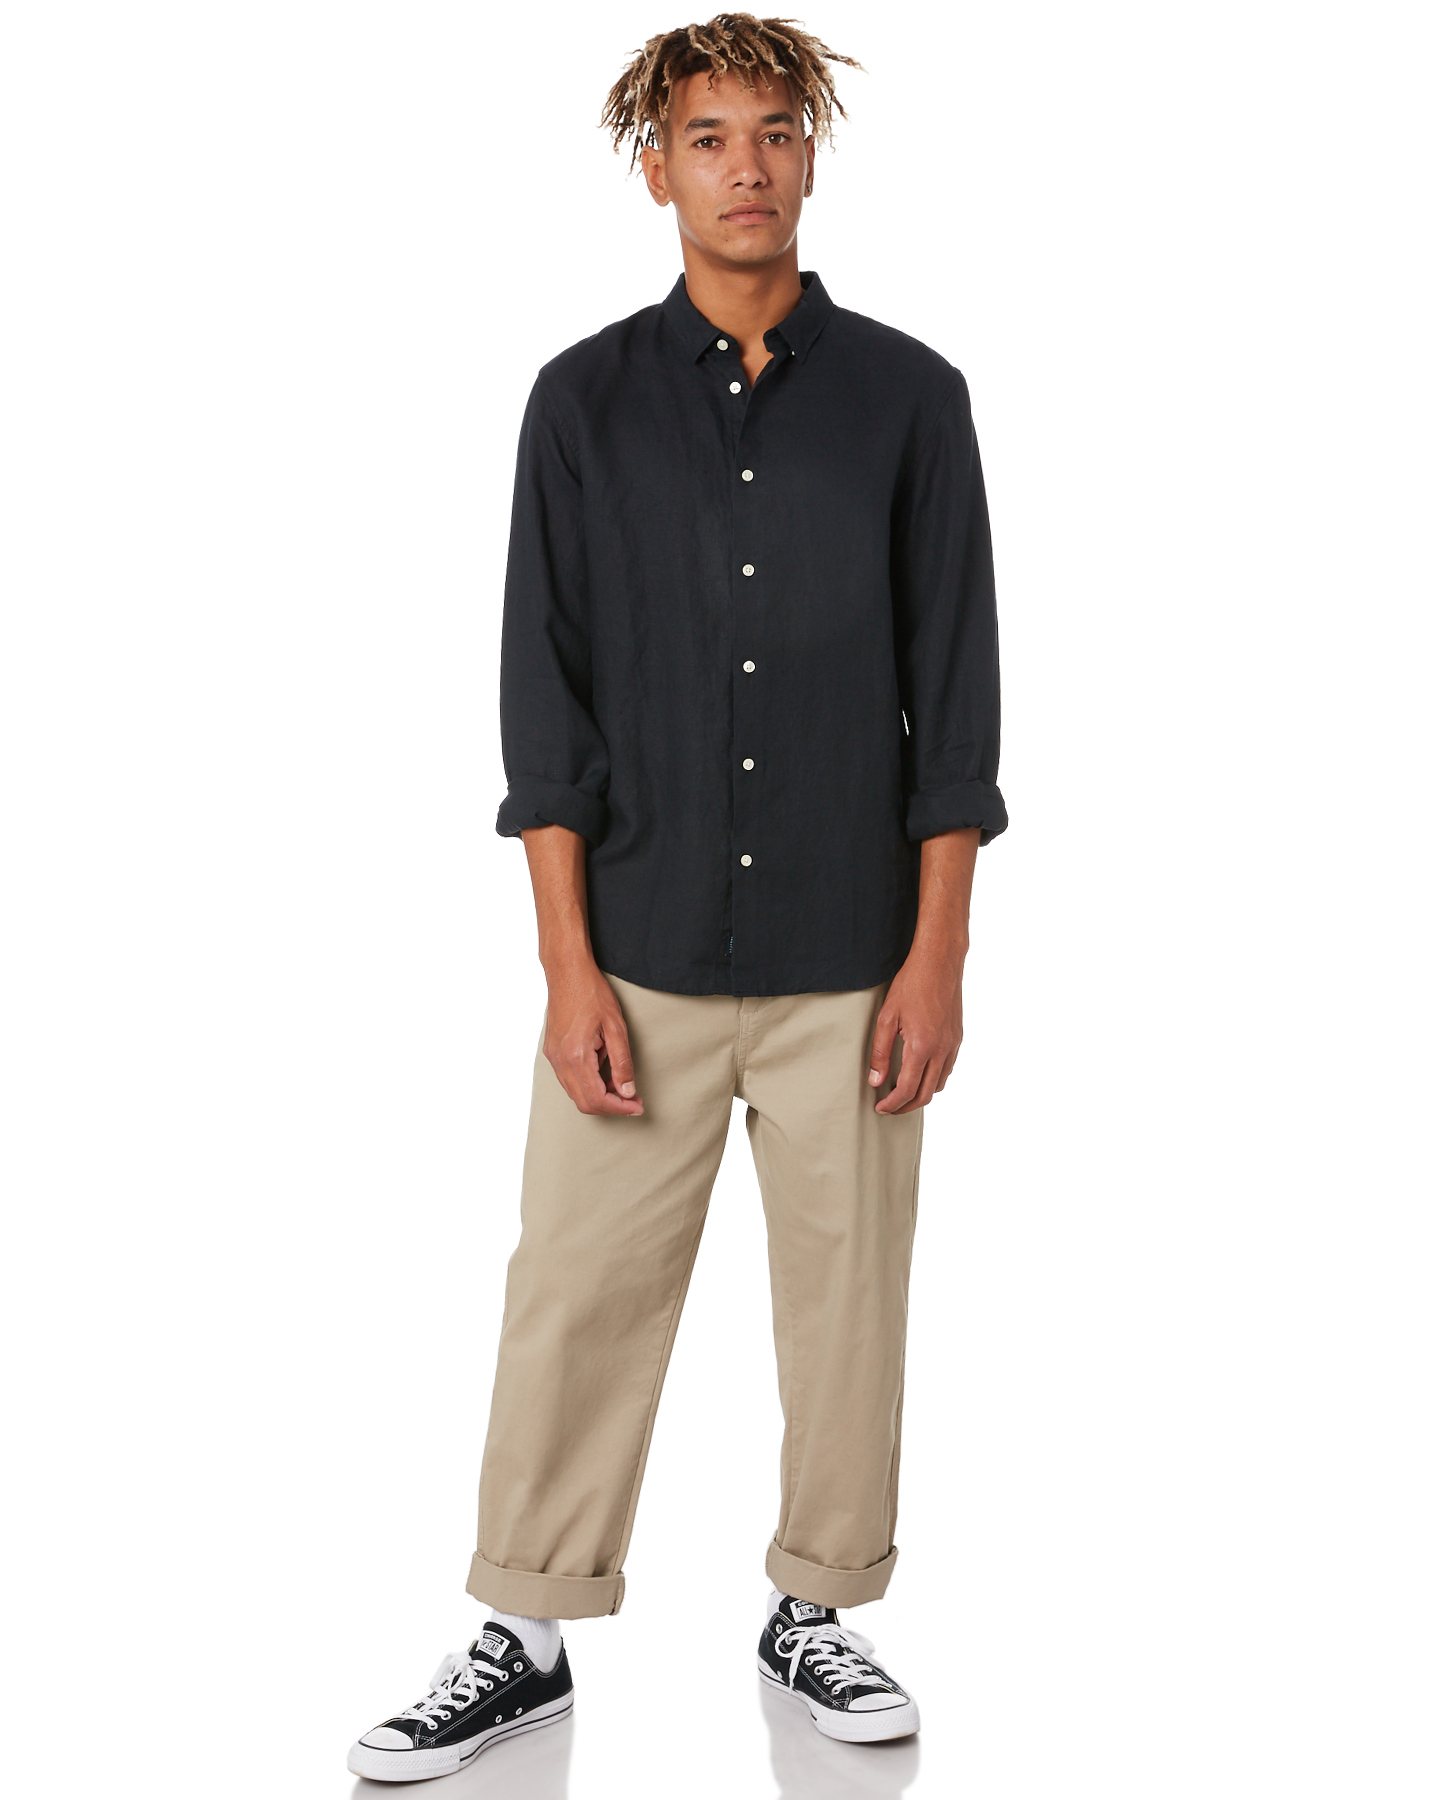 Academy Brand Stamford Mens Linen Shirt - Black | SurfStitch